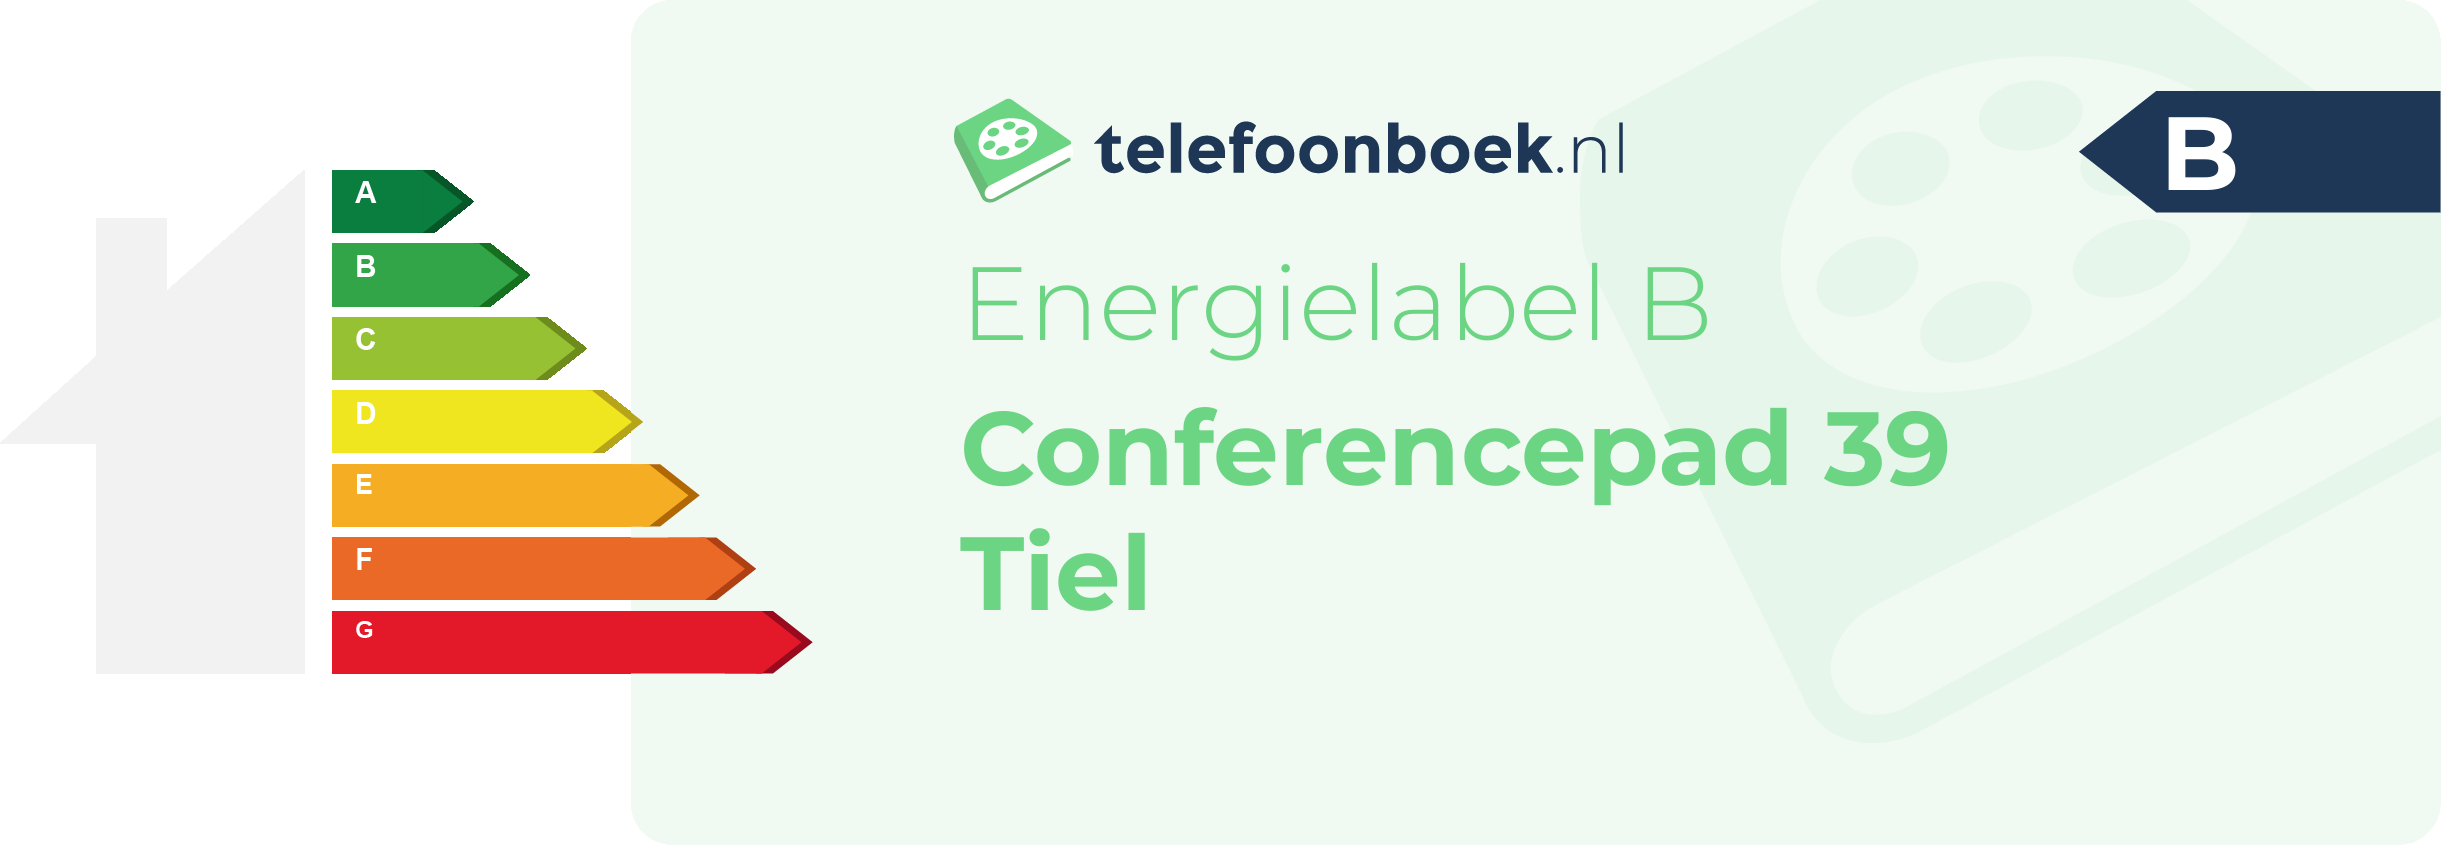 Energielabel Conferencepad 39 Tiel